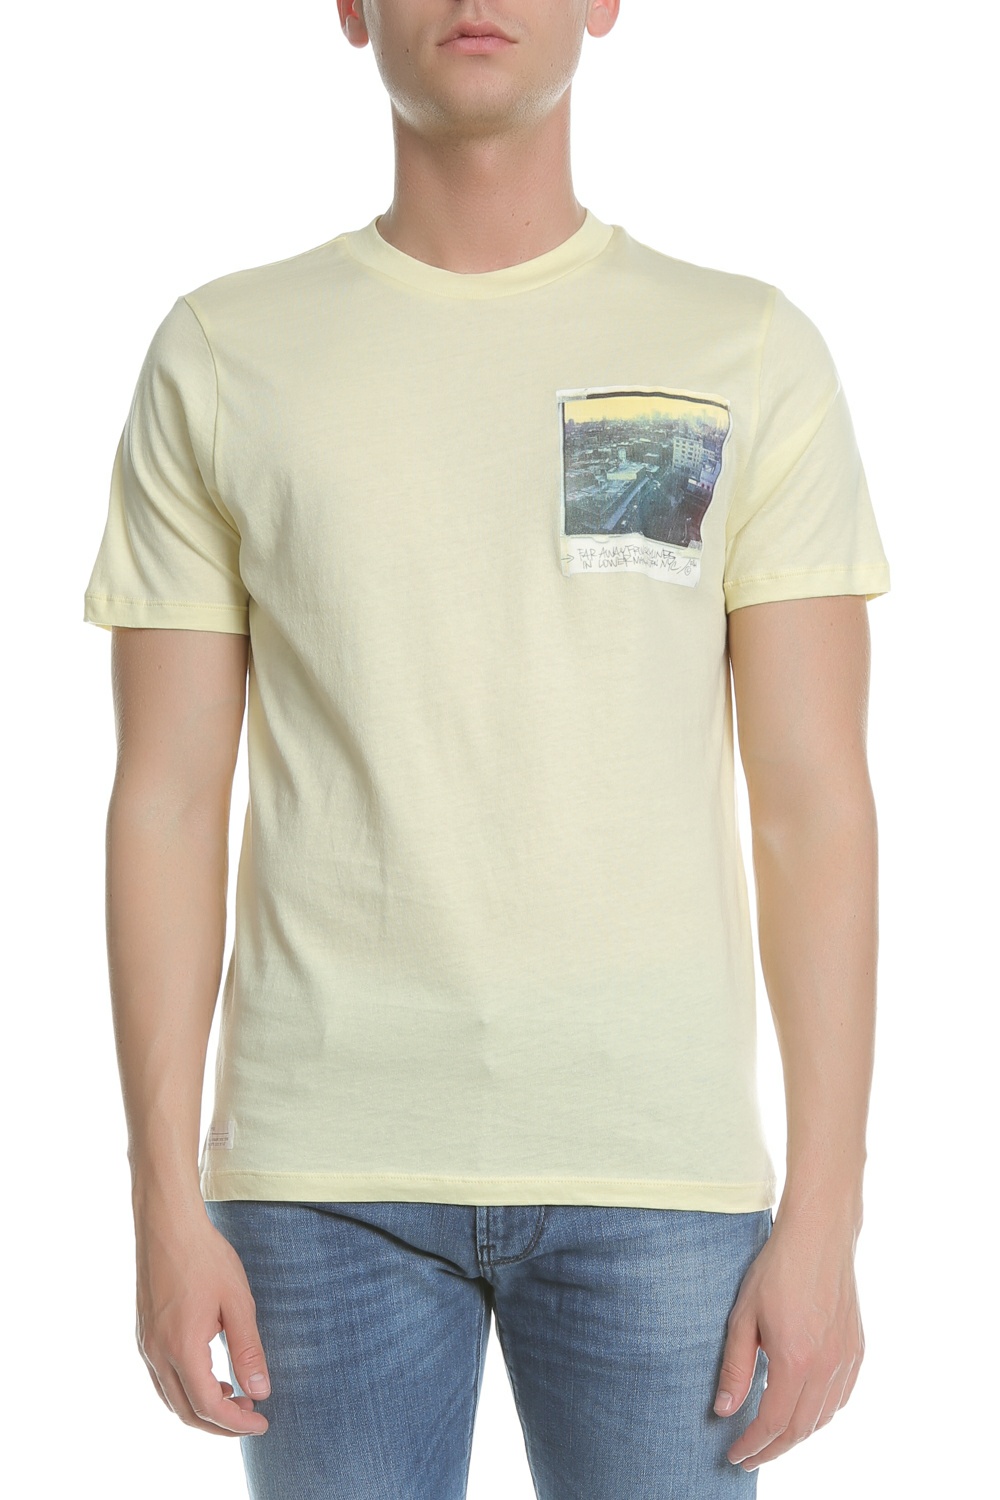 Ανδρικά/Ρούχα/Μπλούζες/Κοντομάνικες FRANKLIN & MARSHALL - Ανδρική κοντομάνικη μπλούζα FRANKLIN & MARSHALL κίτρινη